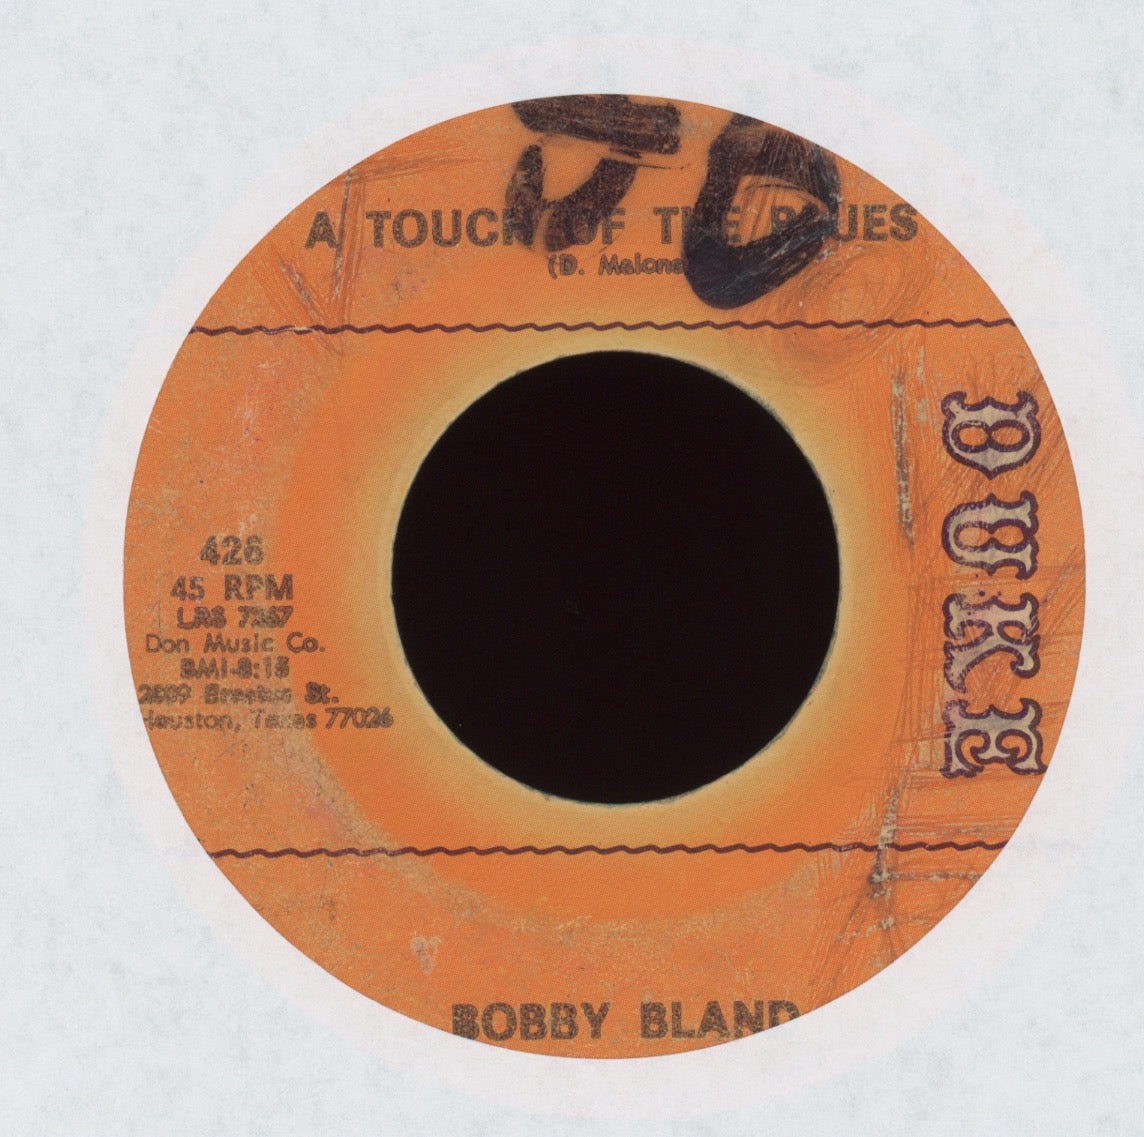 Bobby Bland - Shoes on Duke